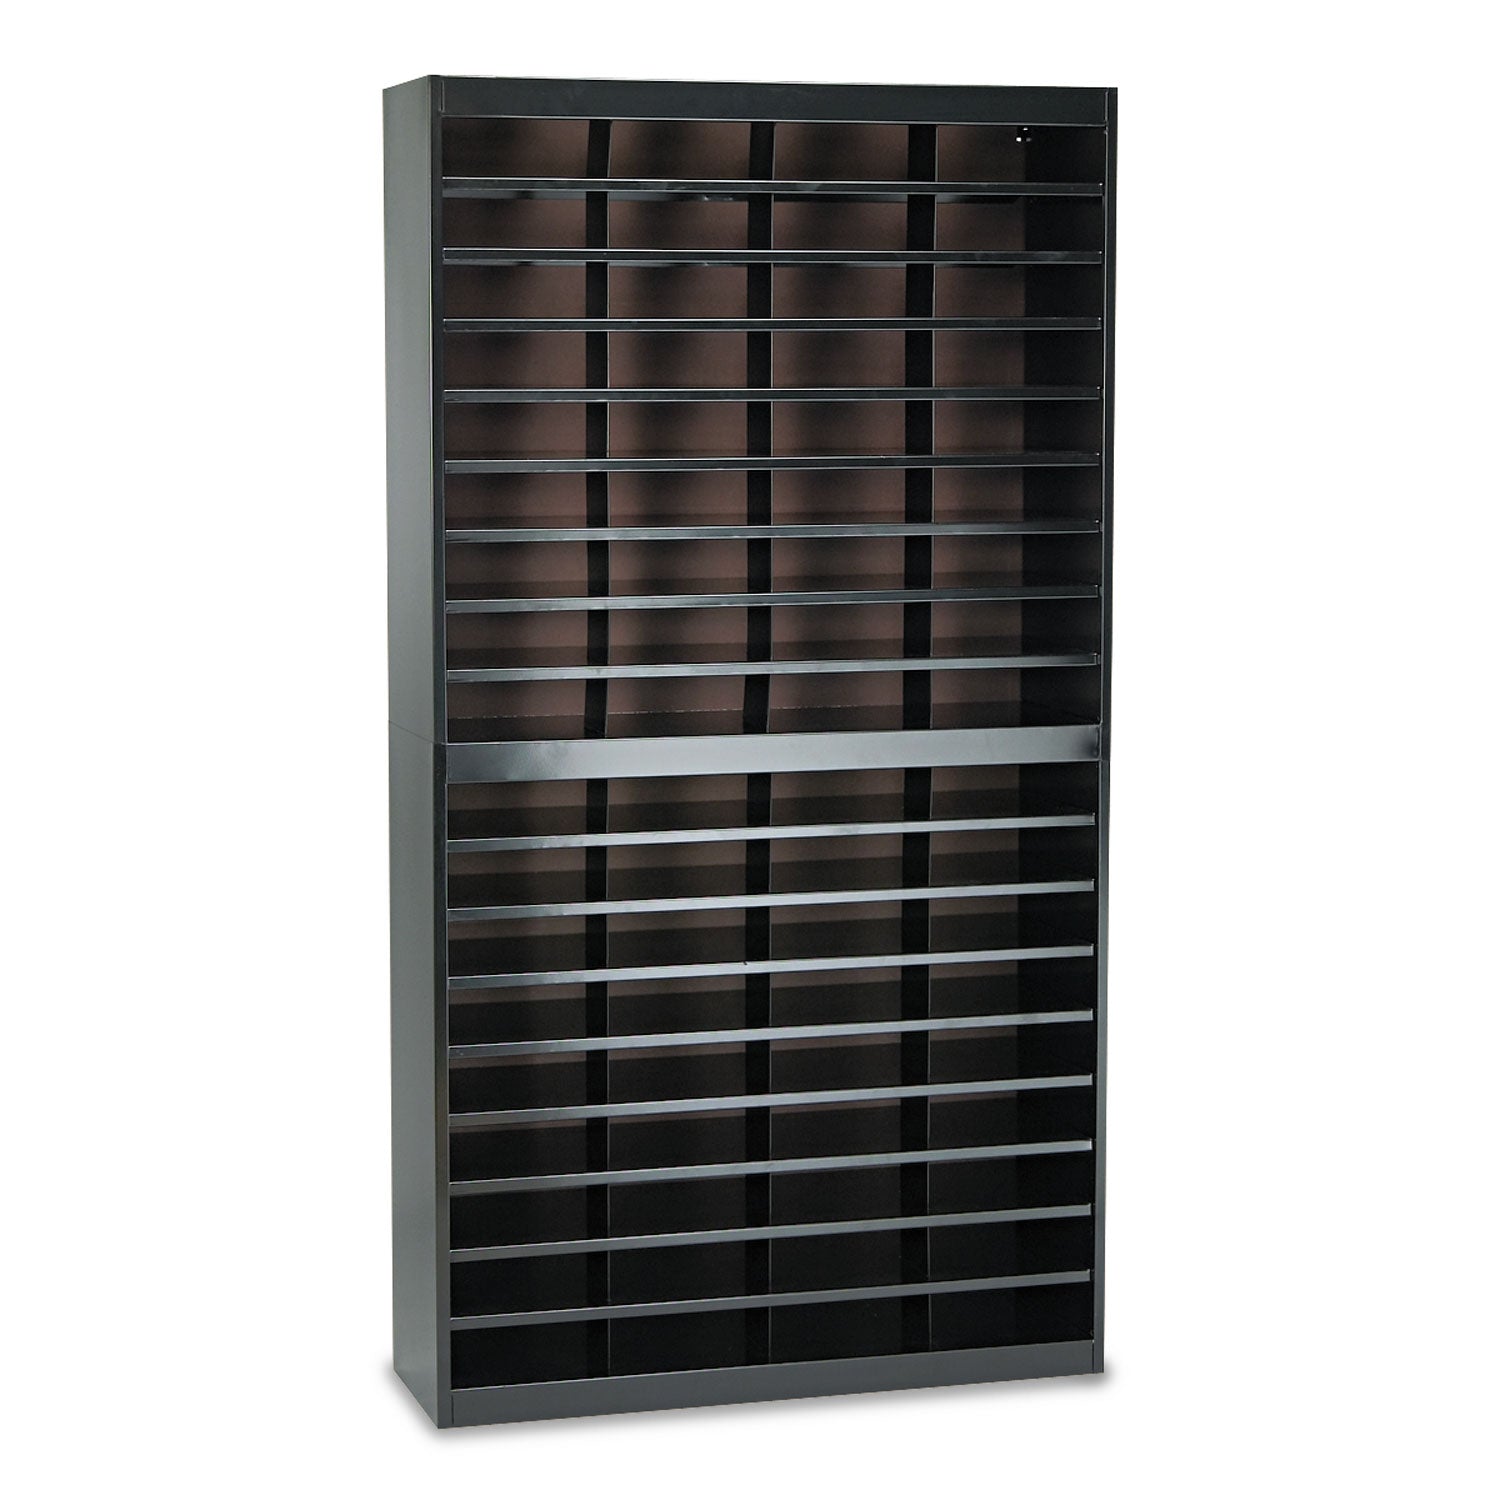 Steel/Fiberboard E-Z Stor Sorter, 72 Compartments, 37.5 x 12.75 x 71, Black - 